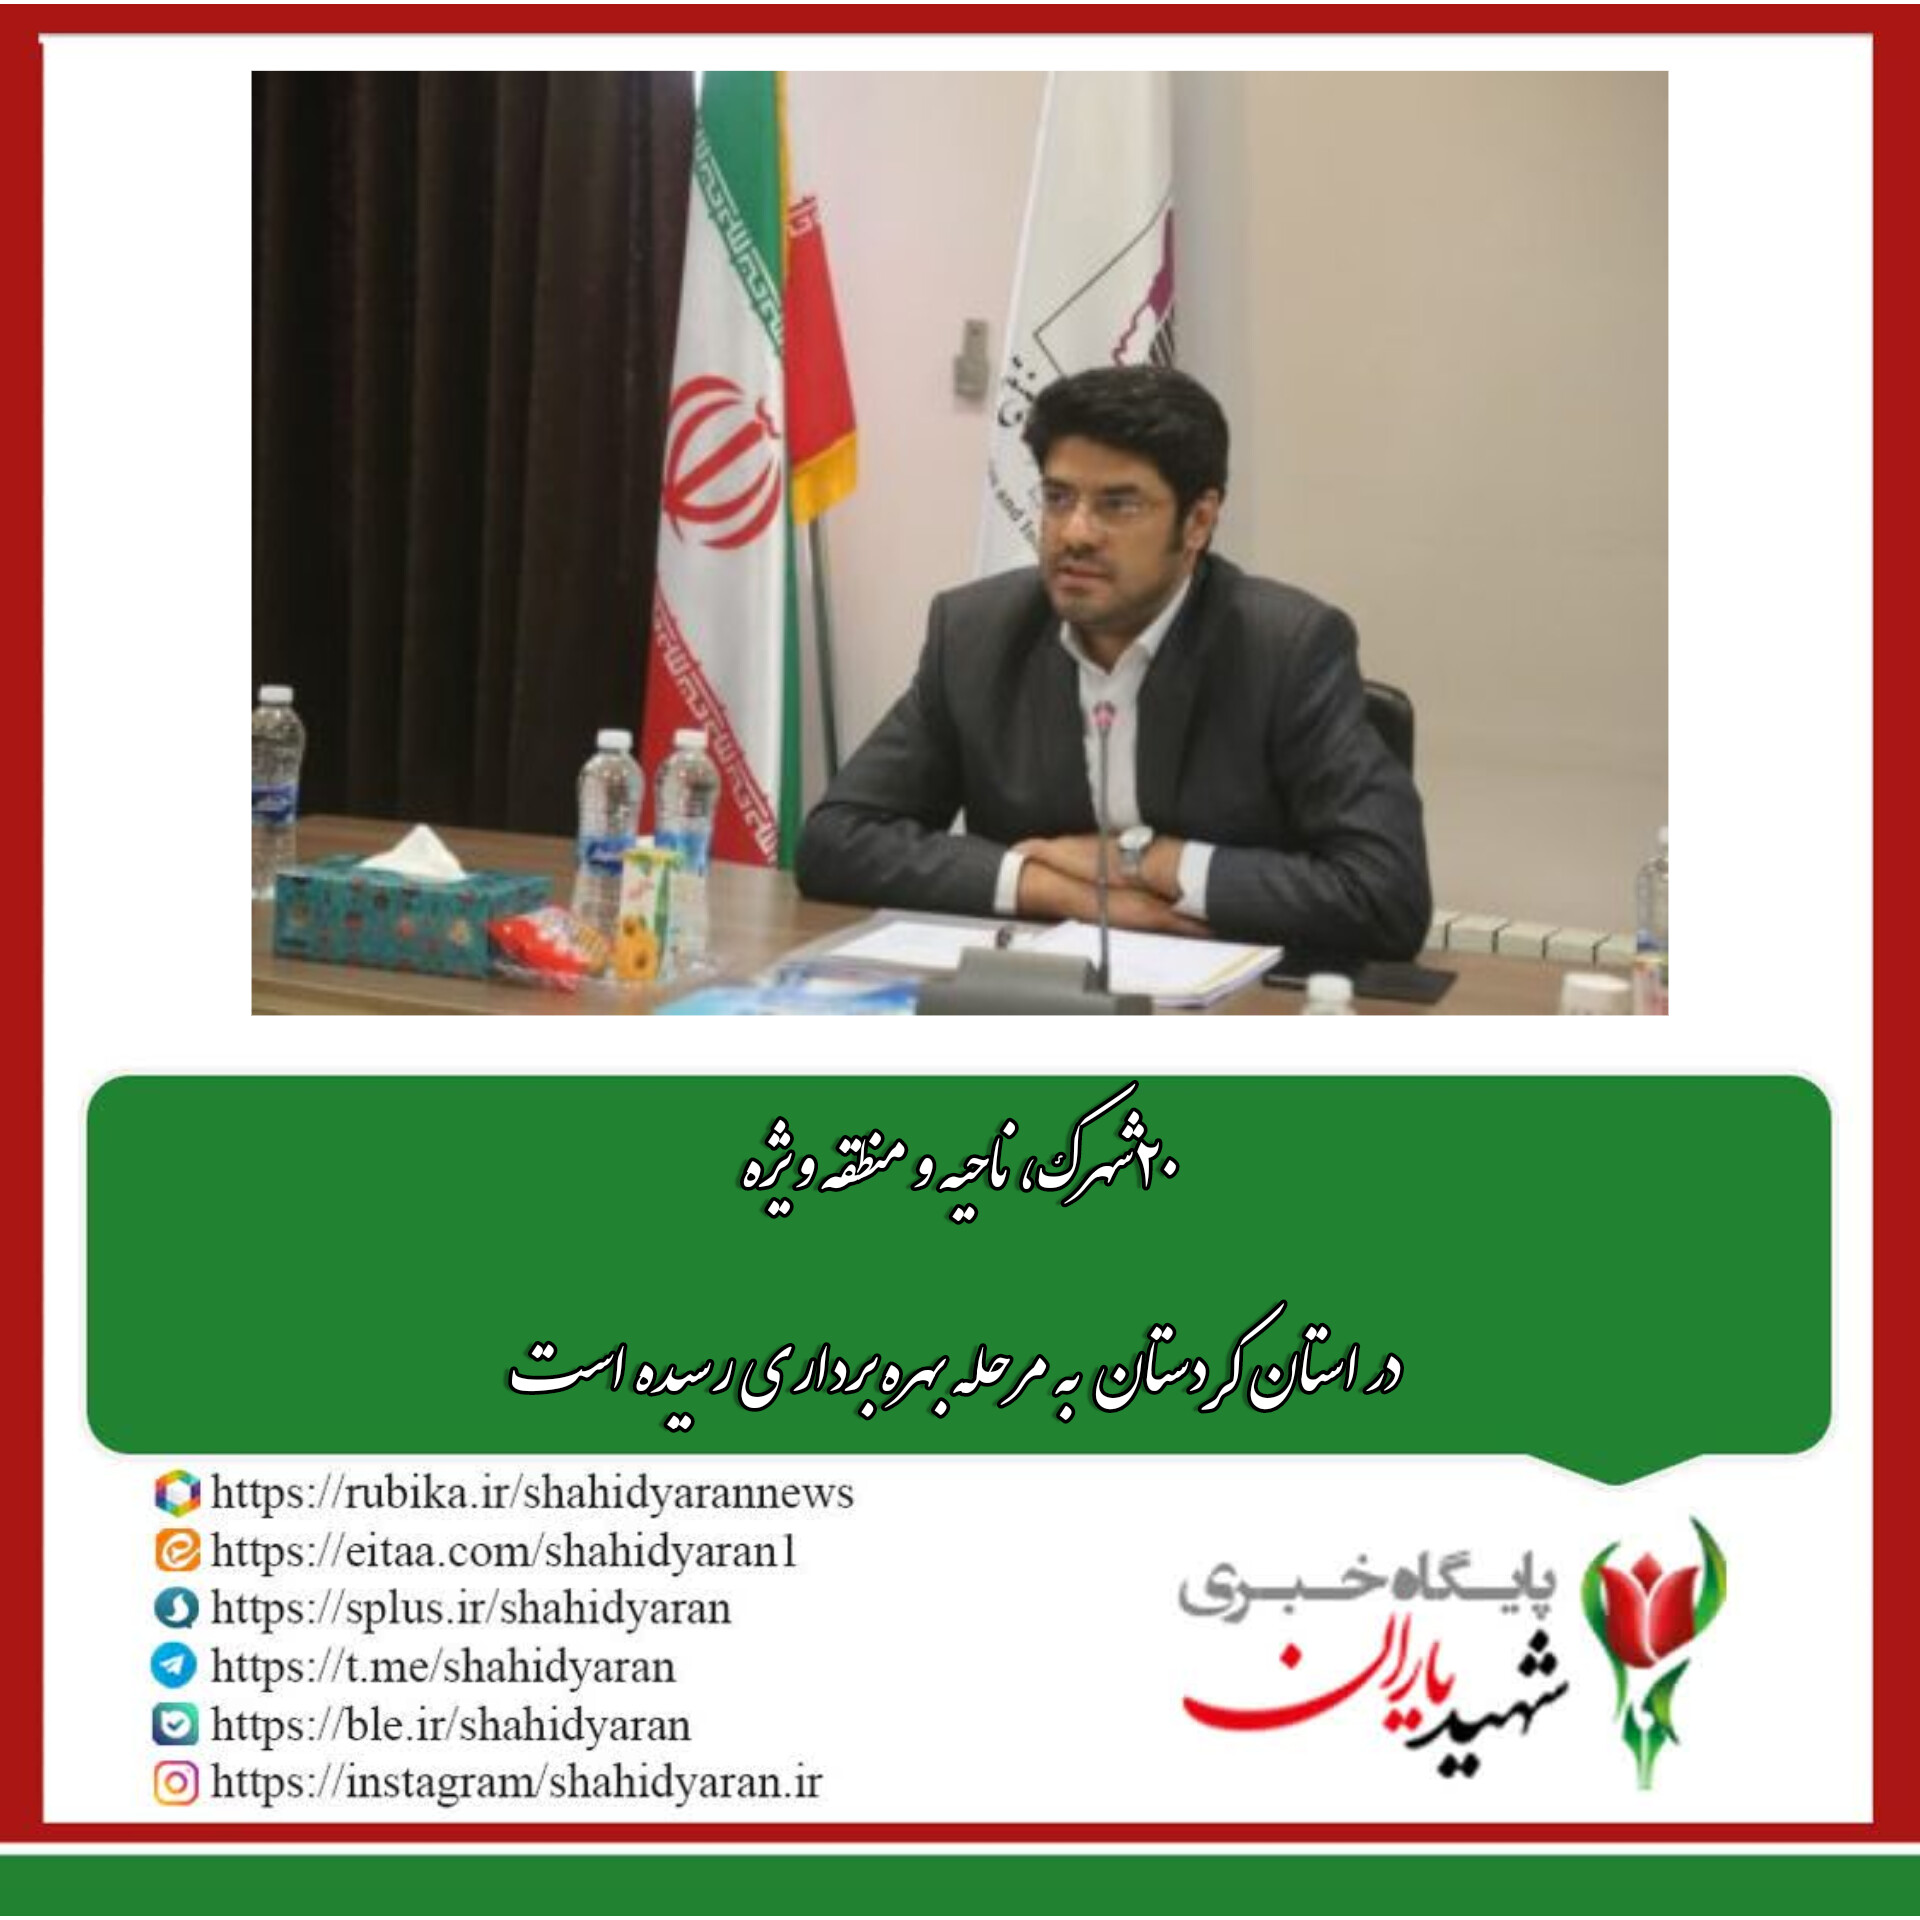 مدیرعامل شرکت شهرک های صنعتی کردستان در جمع رسانه های استان: